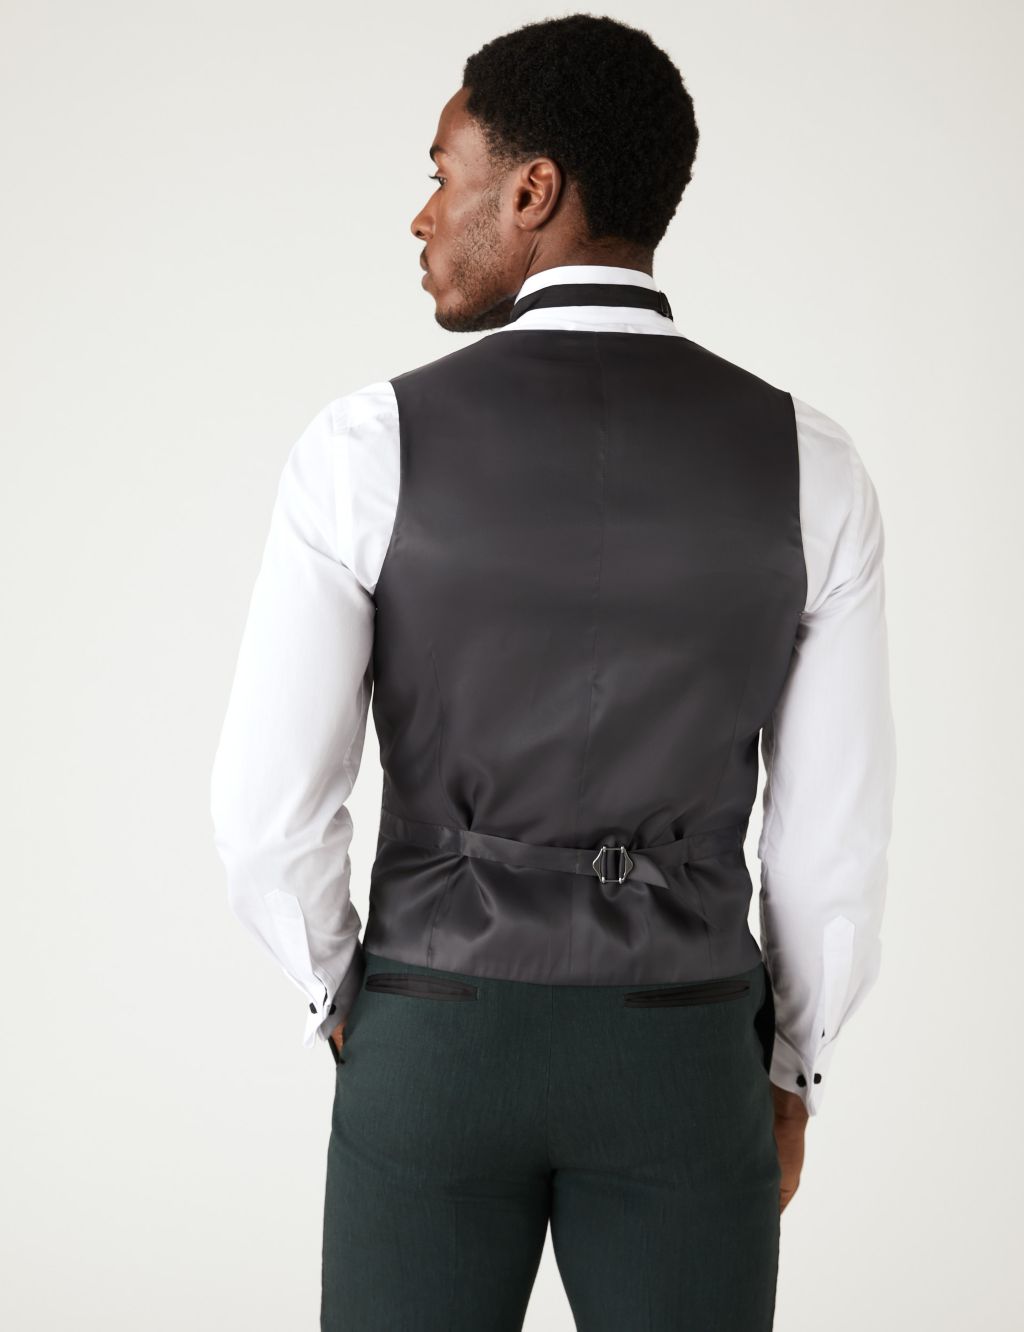 Tailored Fit Italian Linen Miracle™ Tuxedo image 3